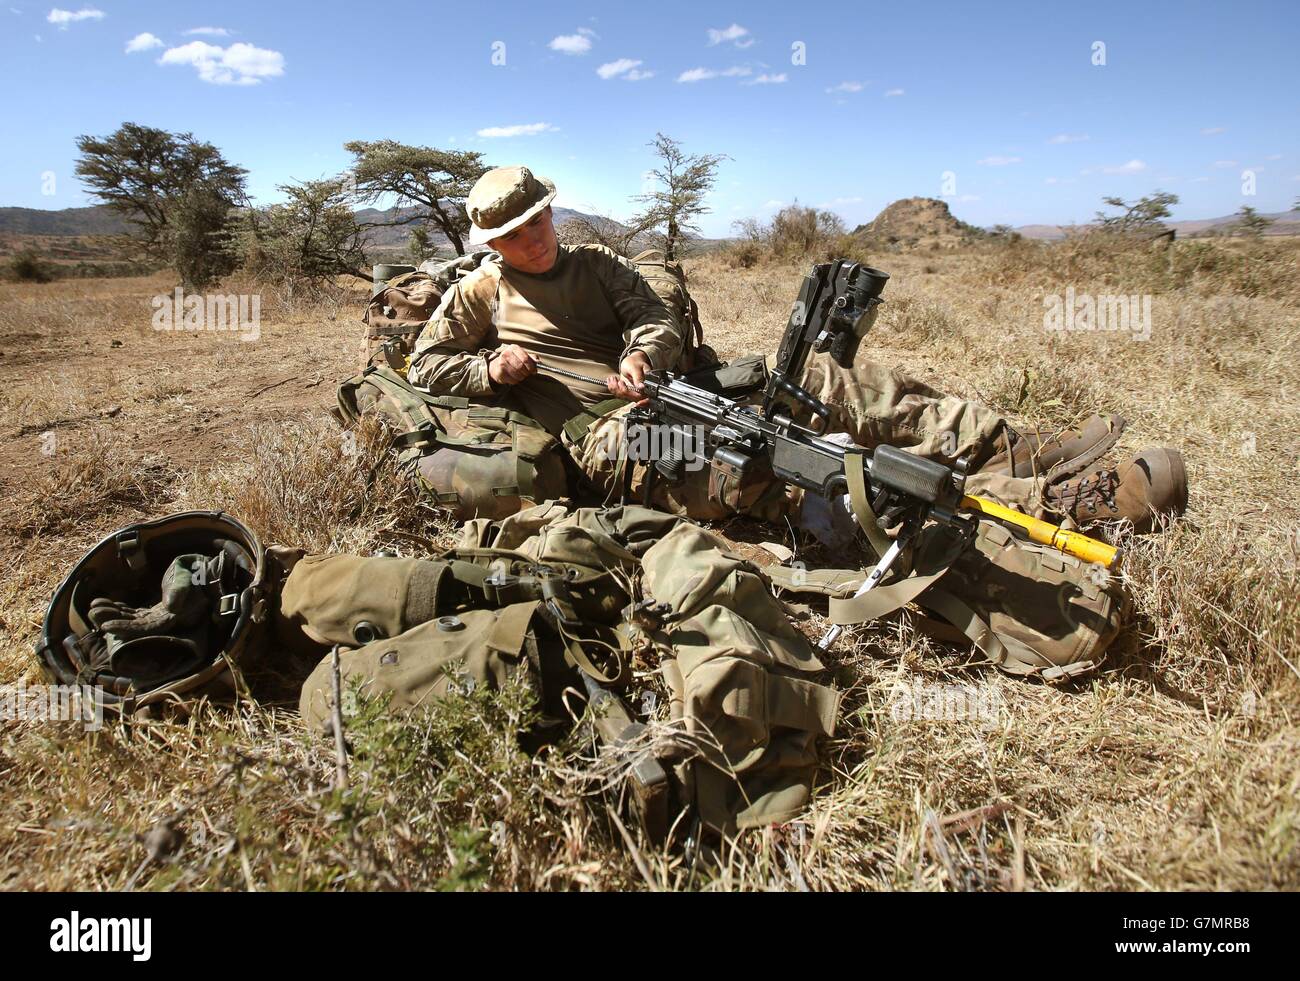 Ein Soldat reinigt seine Waffe, während Truppen des 2. Bataillons, des Royal Regiment of Scotland, an der Übung Askari Storm am Stadtrand von Nanyuki, Kenia, teilnehmen. Stockfoto